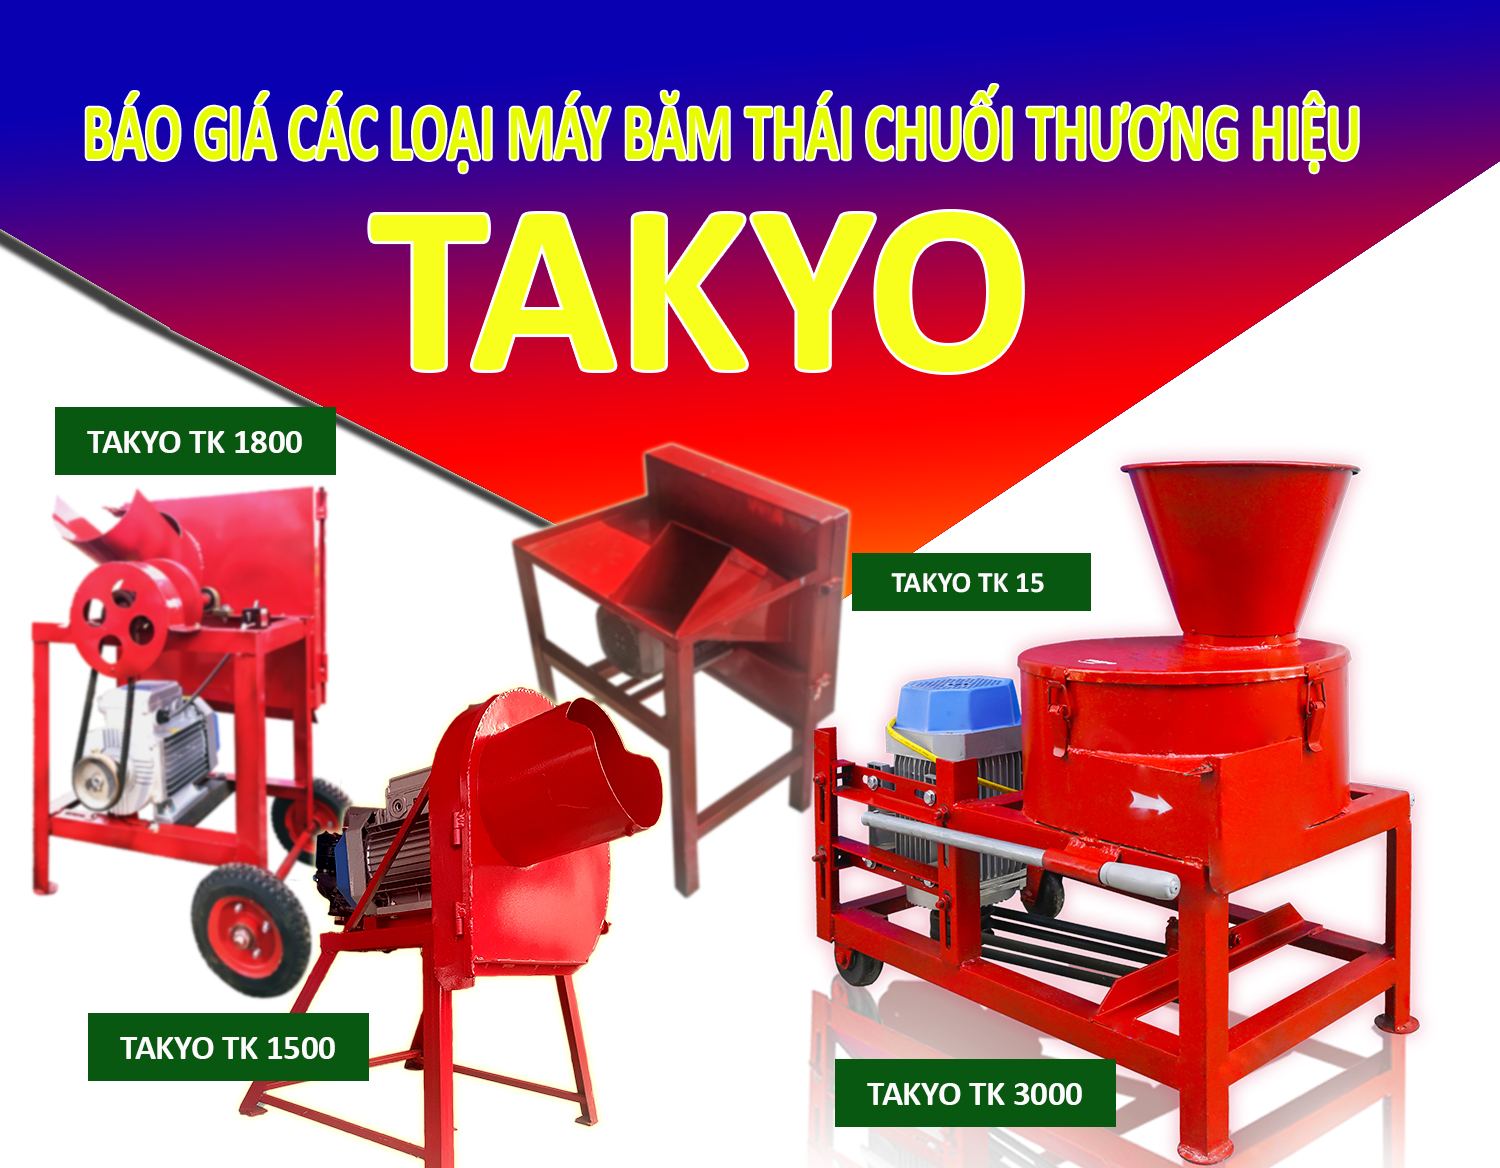 Tổng hợp các loại máy băm thái chuối Takyo